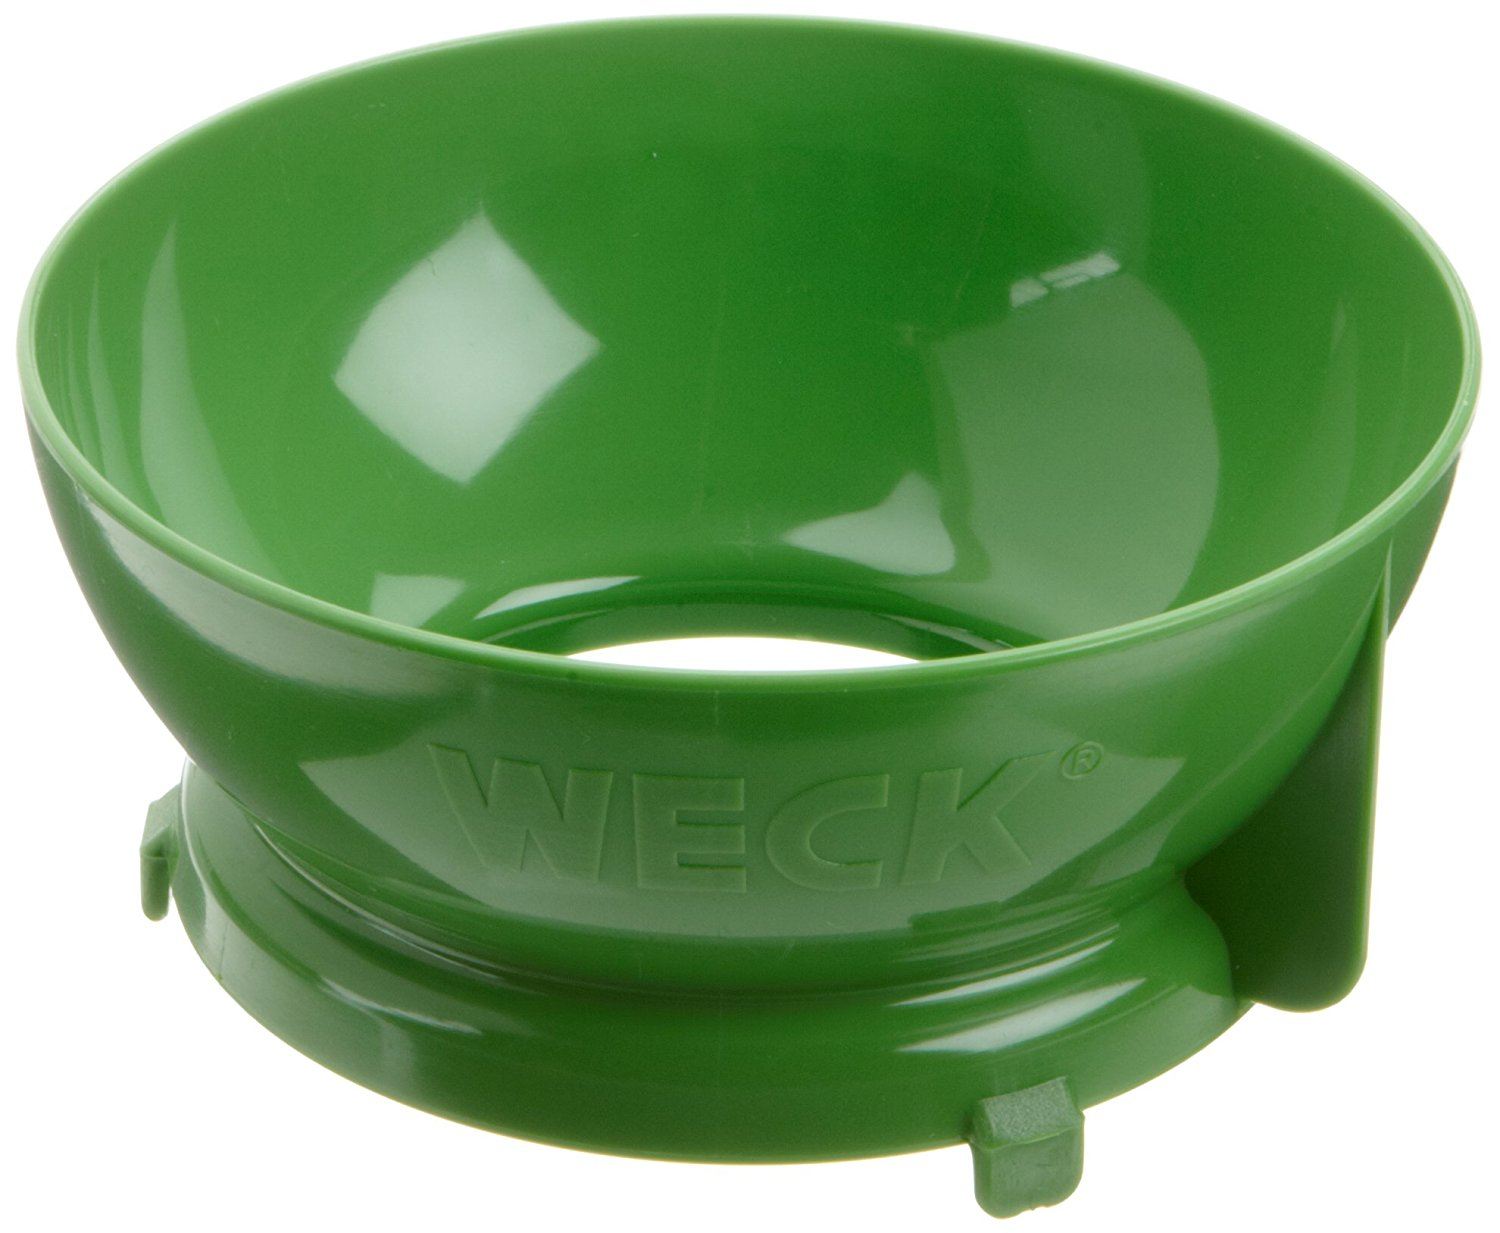 Weck Einfülltrichter (Material: Kunststoff, Grün, 15.4 x 14.4 x 7 cm, passend für Rundgläser & Einkochgläser, zum Aufbewahren von Vorräten)